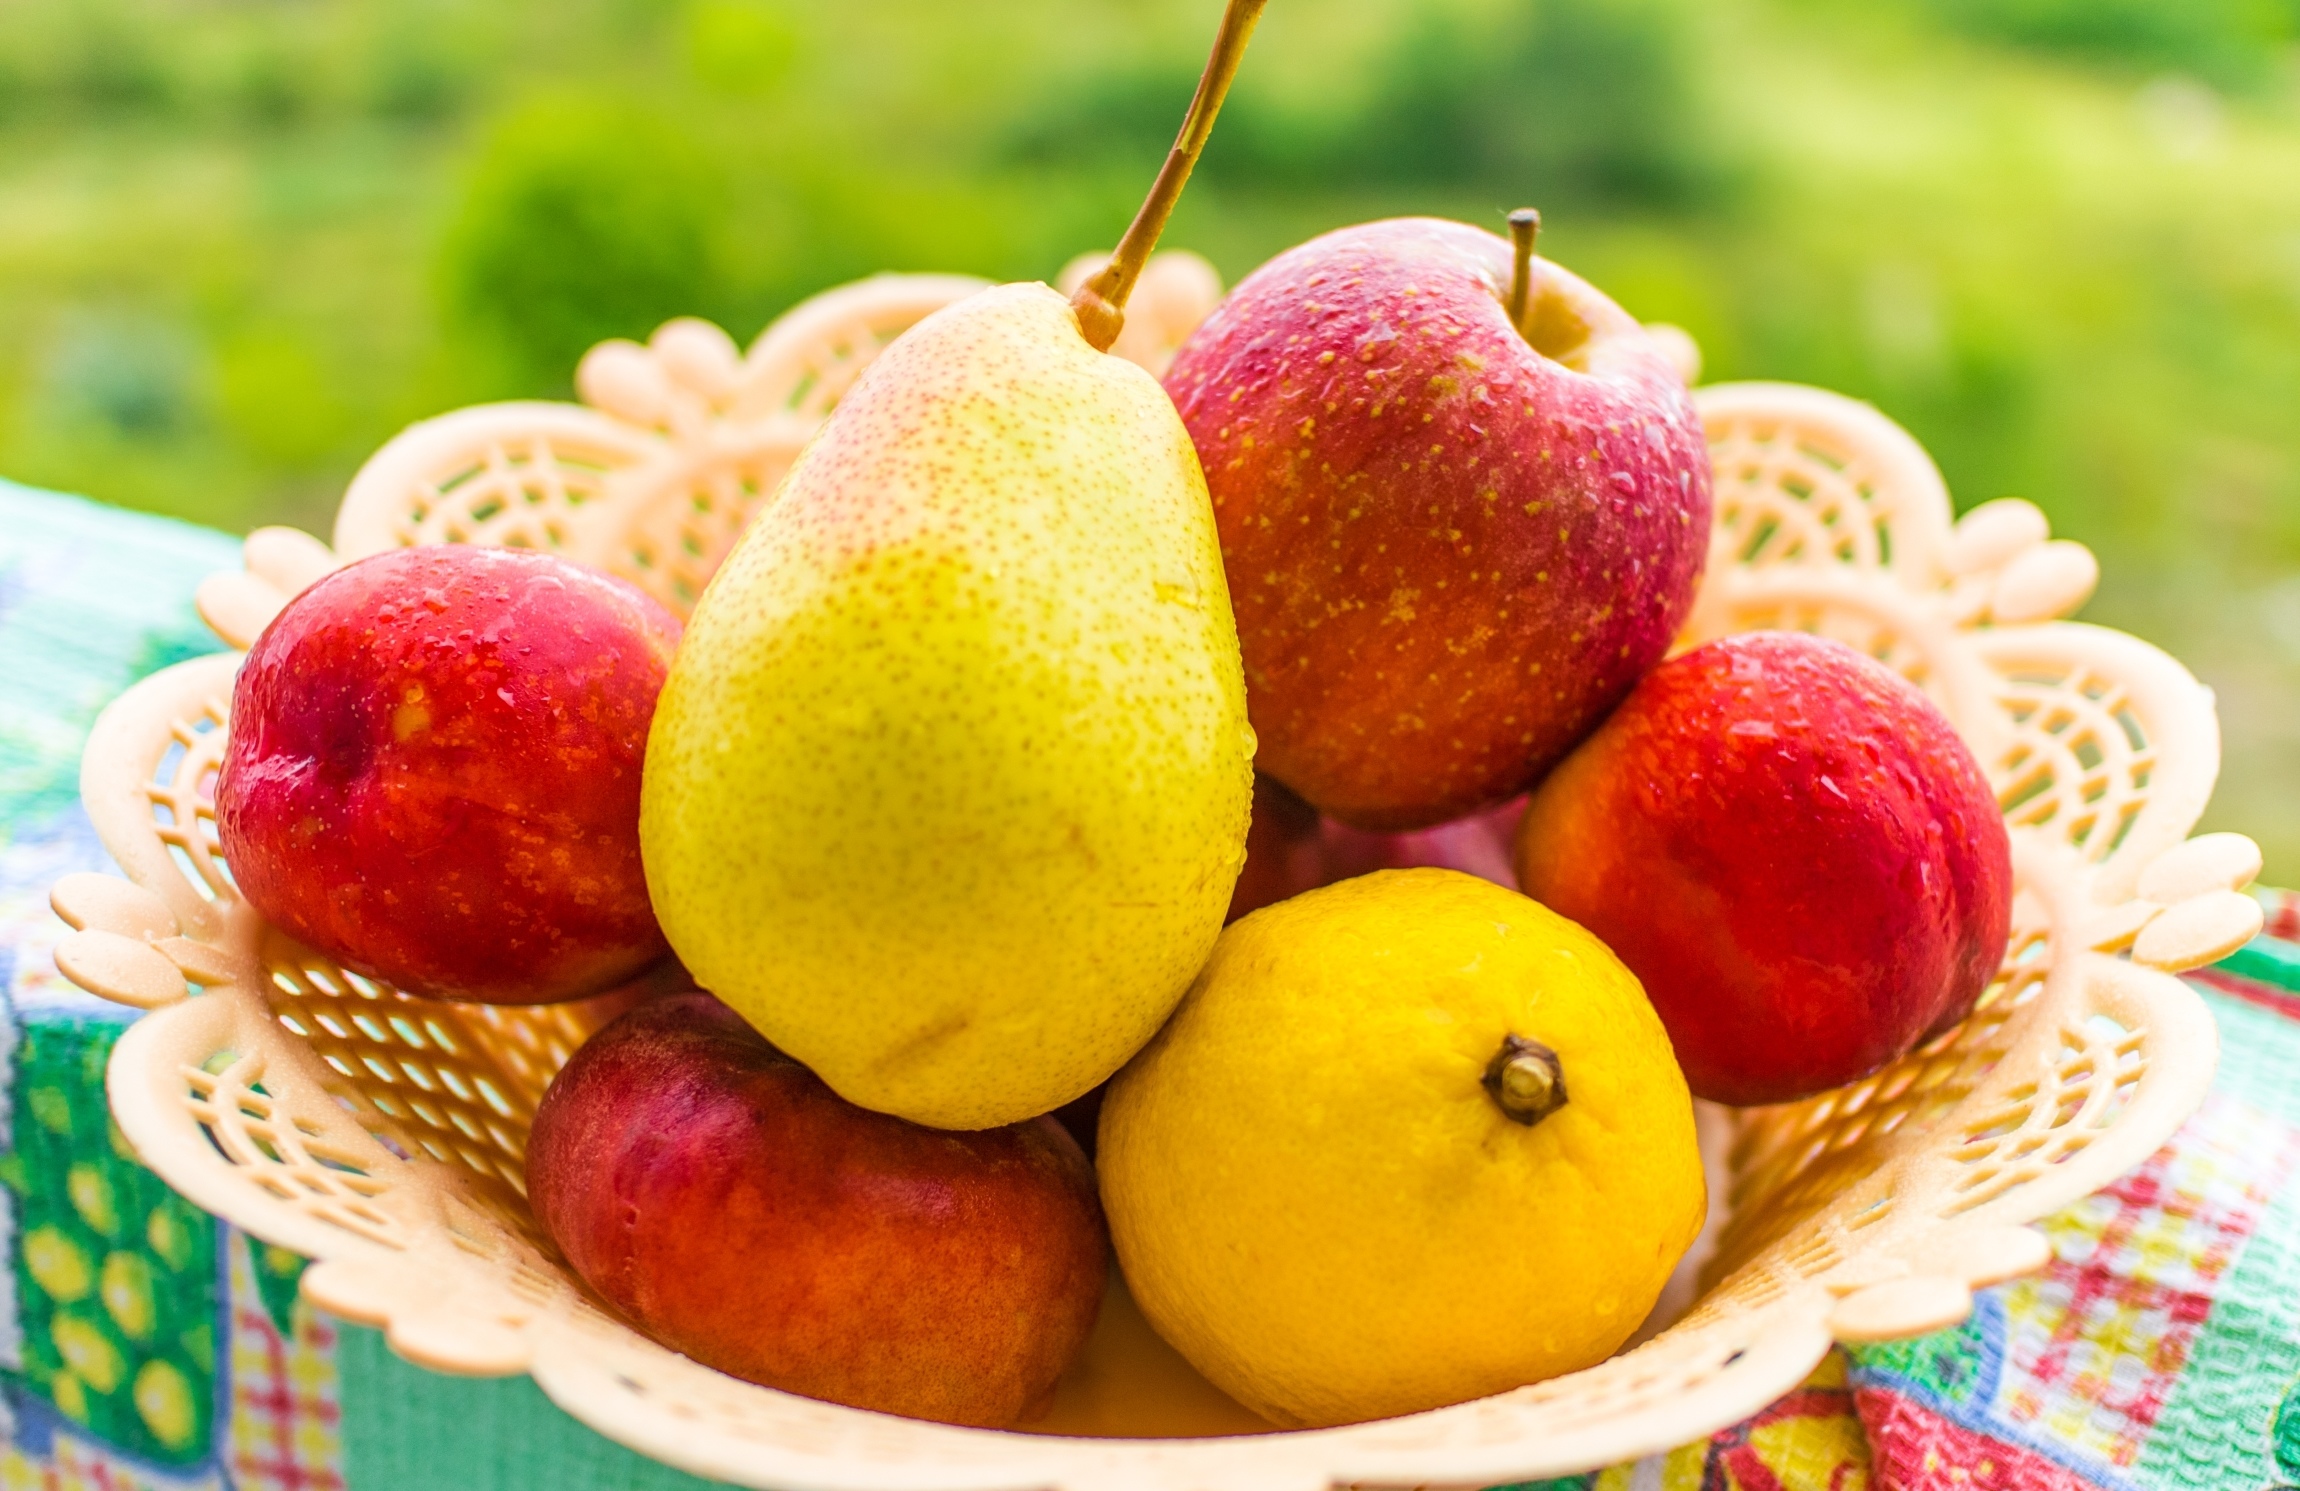 2 12 всех фруктов составляют персики. Фрукты. Летние фрукты. Красивые фрукты. Фрукты яблоки груши.